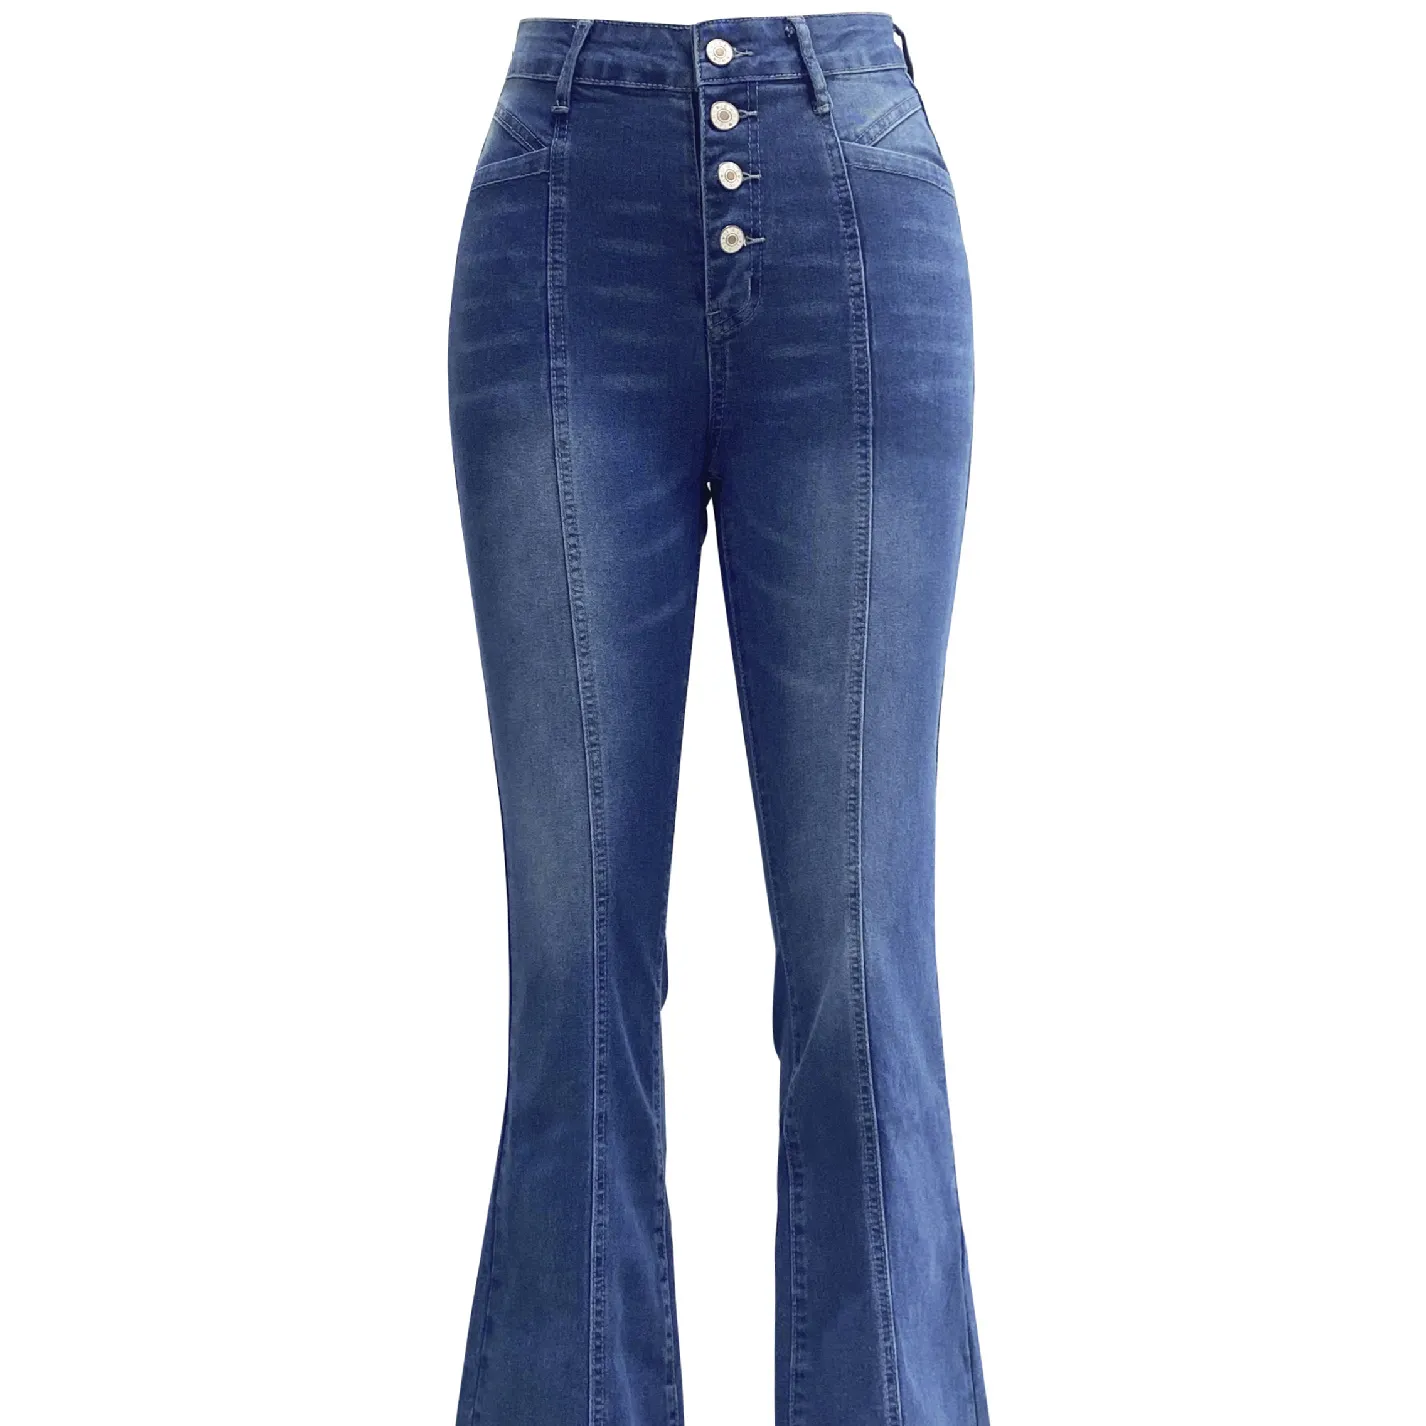 Nuevo modelo en el mercado stretch Slim splicing pantalones vaqueros acampanados wish Women Trend Jeans Ladies